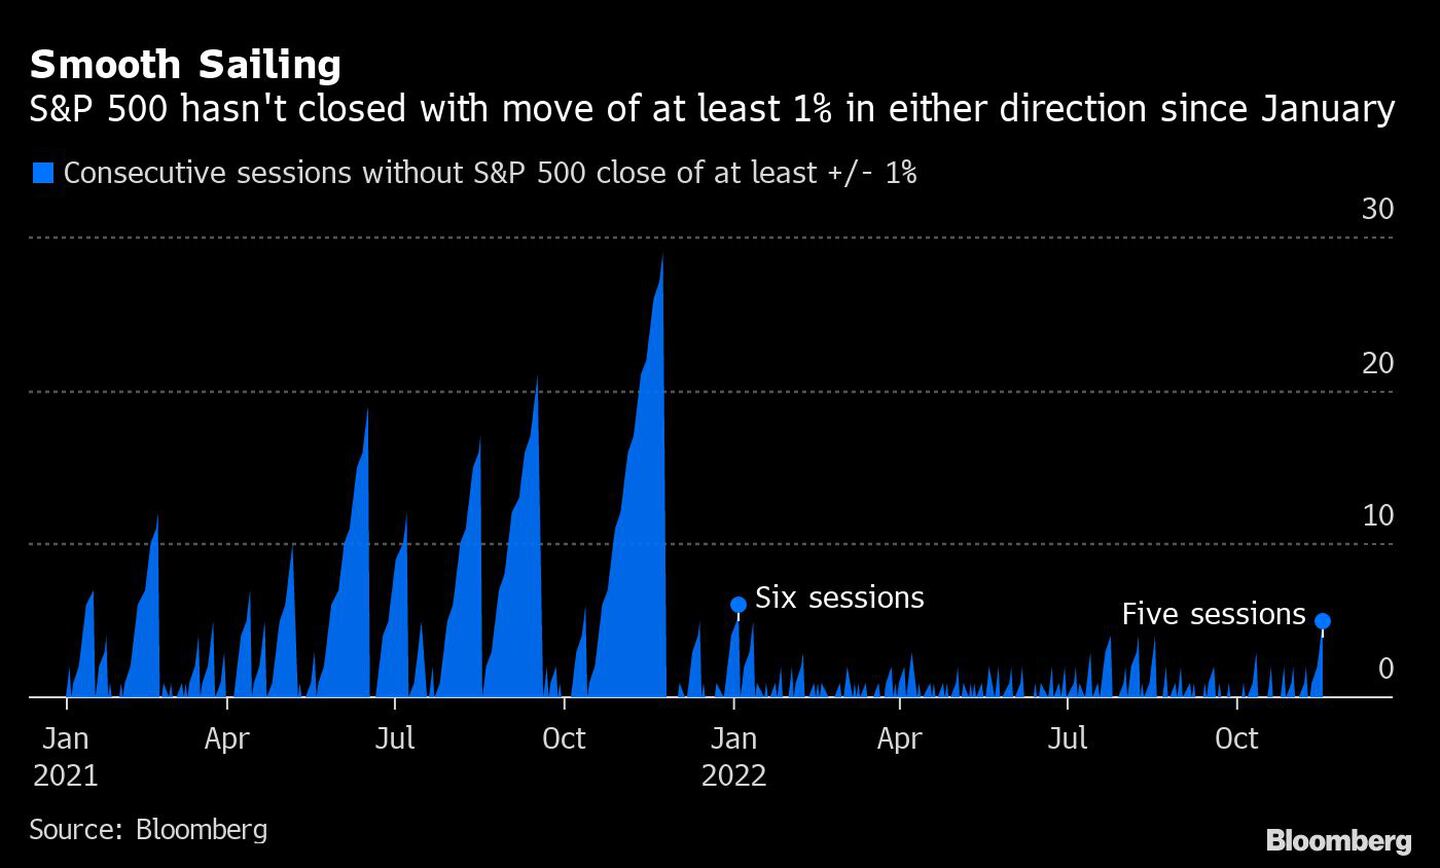 El S&P 500 no ha cerrado con movimientos de al menos 1% en cualquier dirección desde enerodfd